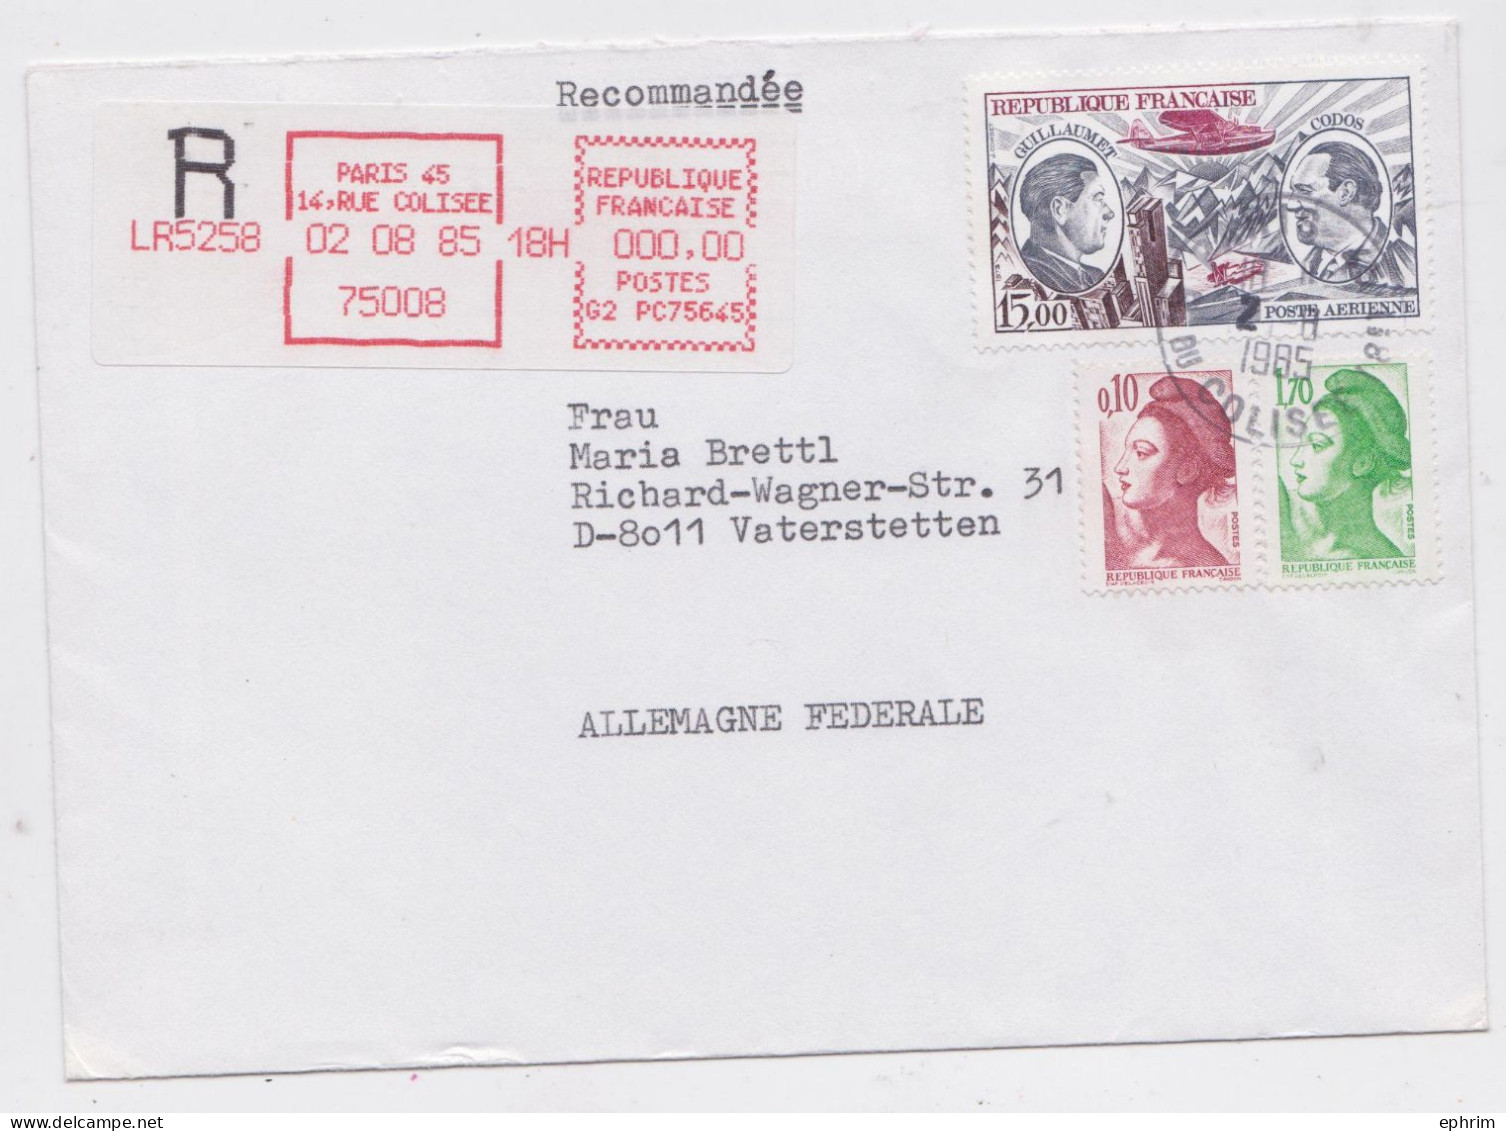 France Paris Lettre Vignette Recommandée Rouge Timbre Poste Aérienne Registered Label Air Mail Cover Vaterstetten 1985 - Cartas & Documentos